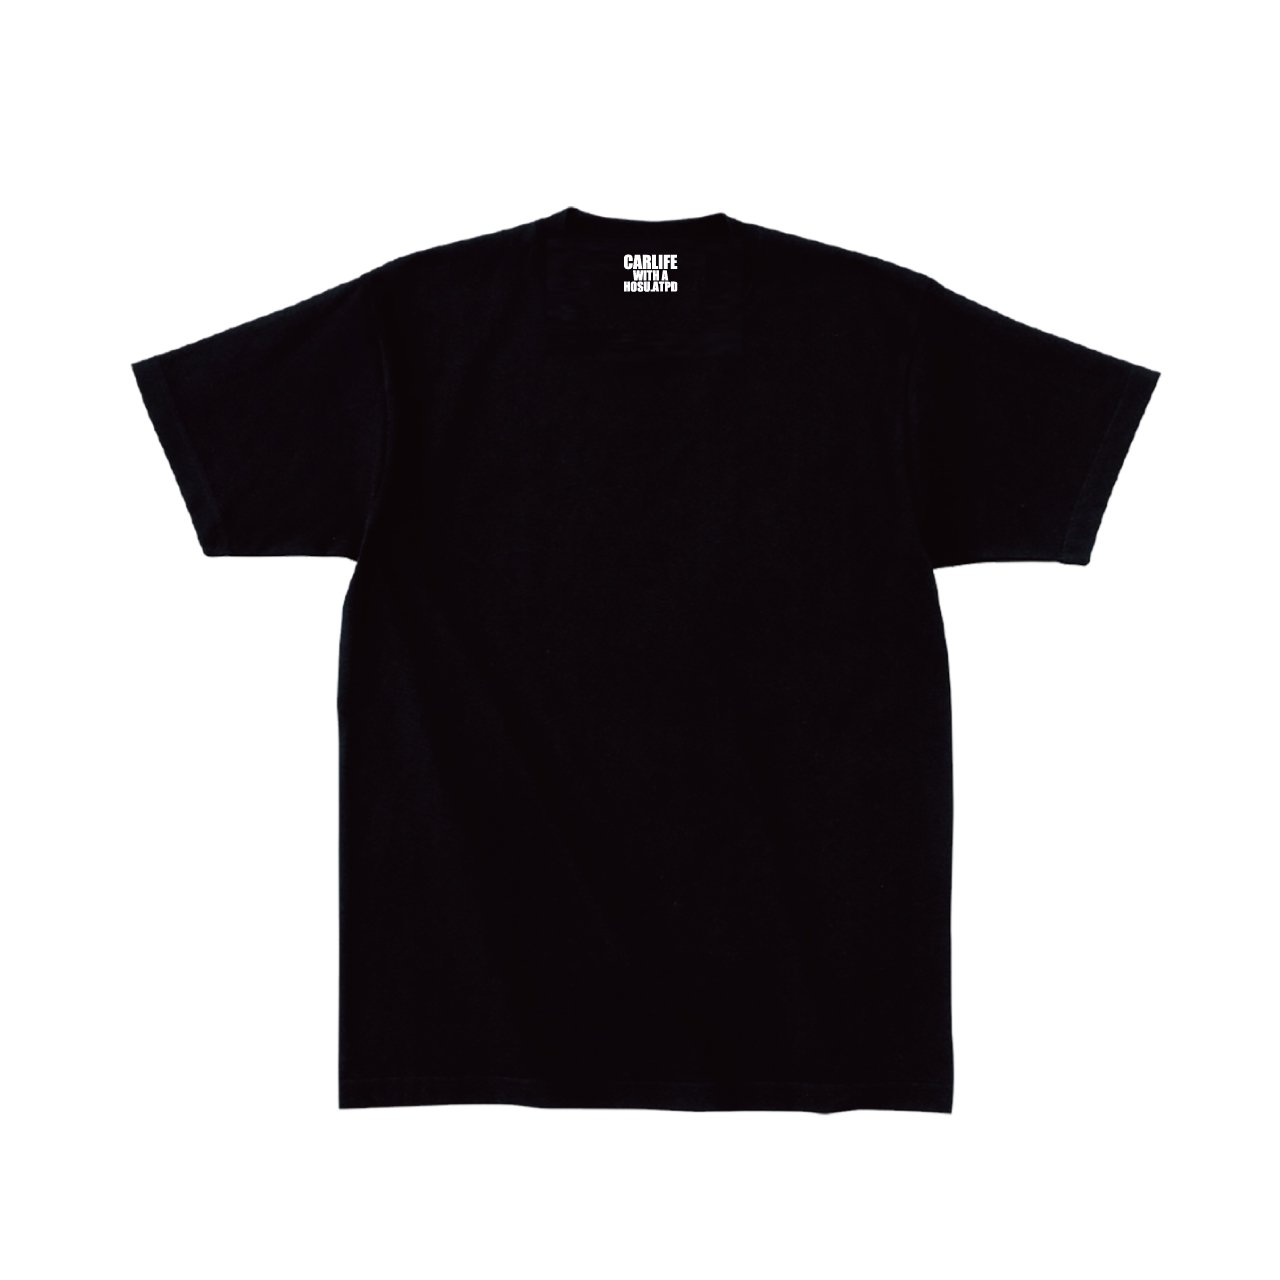 HOSU CARLIFE WITH A ロゴプリントTシャツ(ブラック) - HOSU